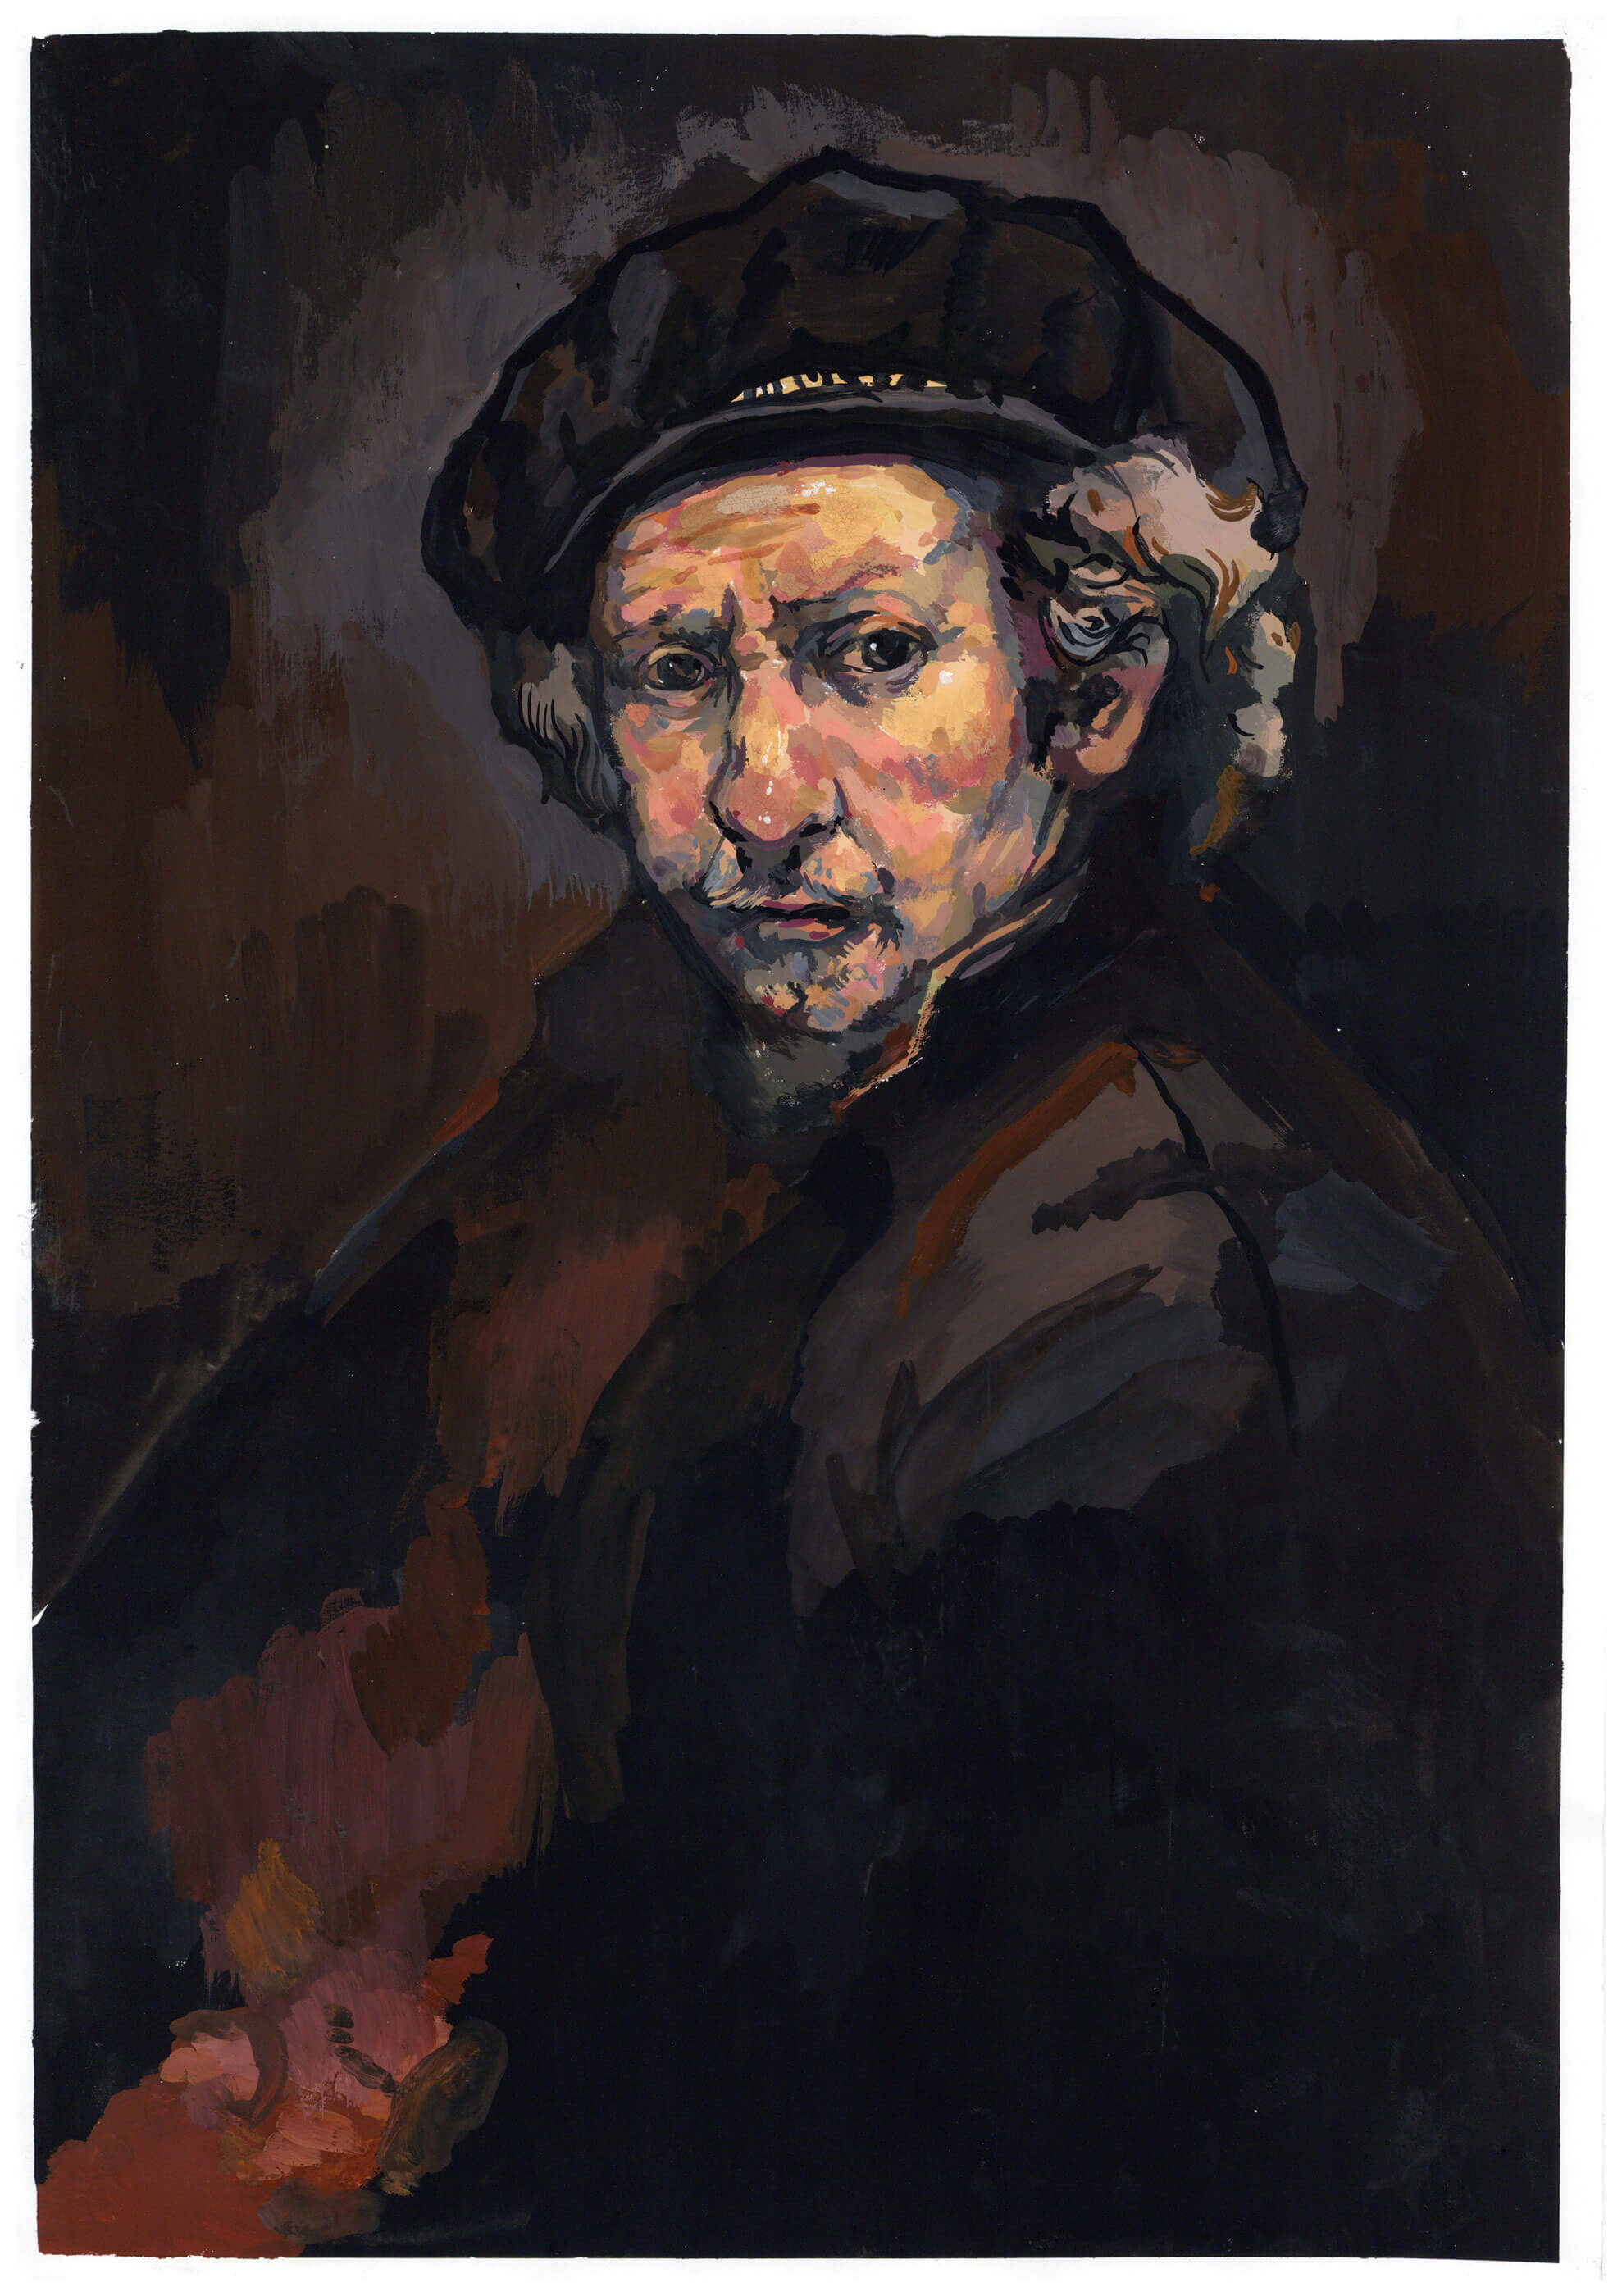 Rendition of a Rembrandt self portrait.